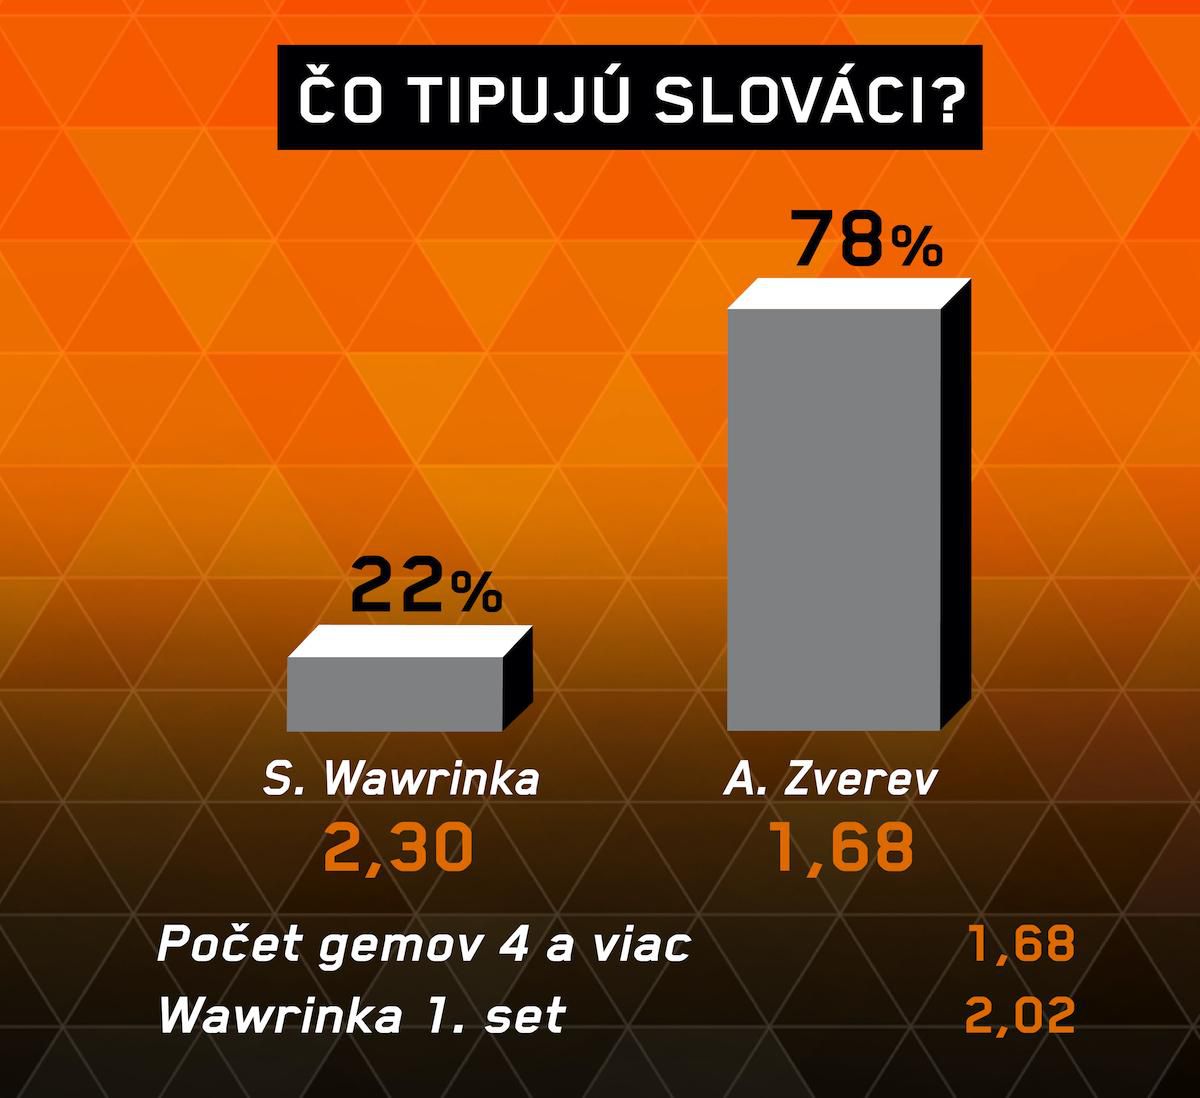 Analýza zápasu S. Wawrinka – A. Zverev.